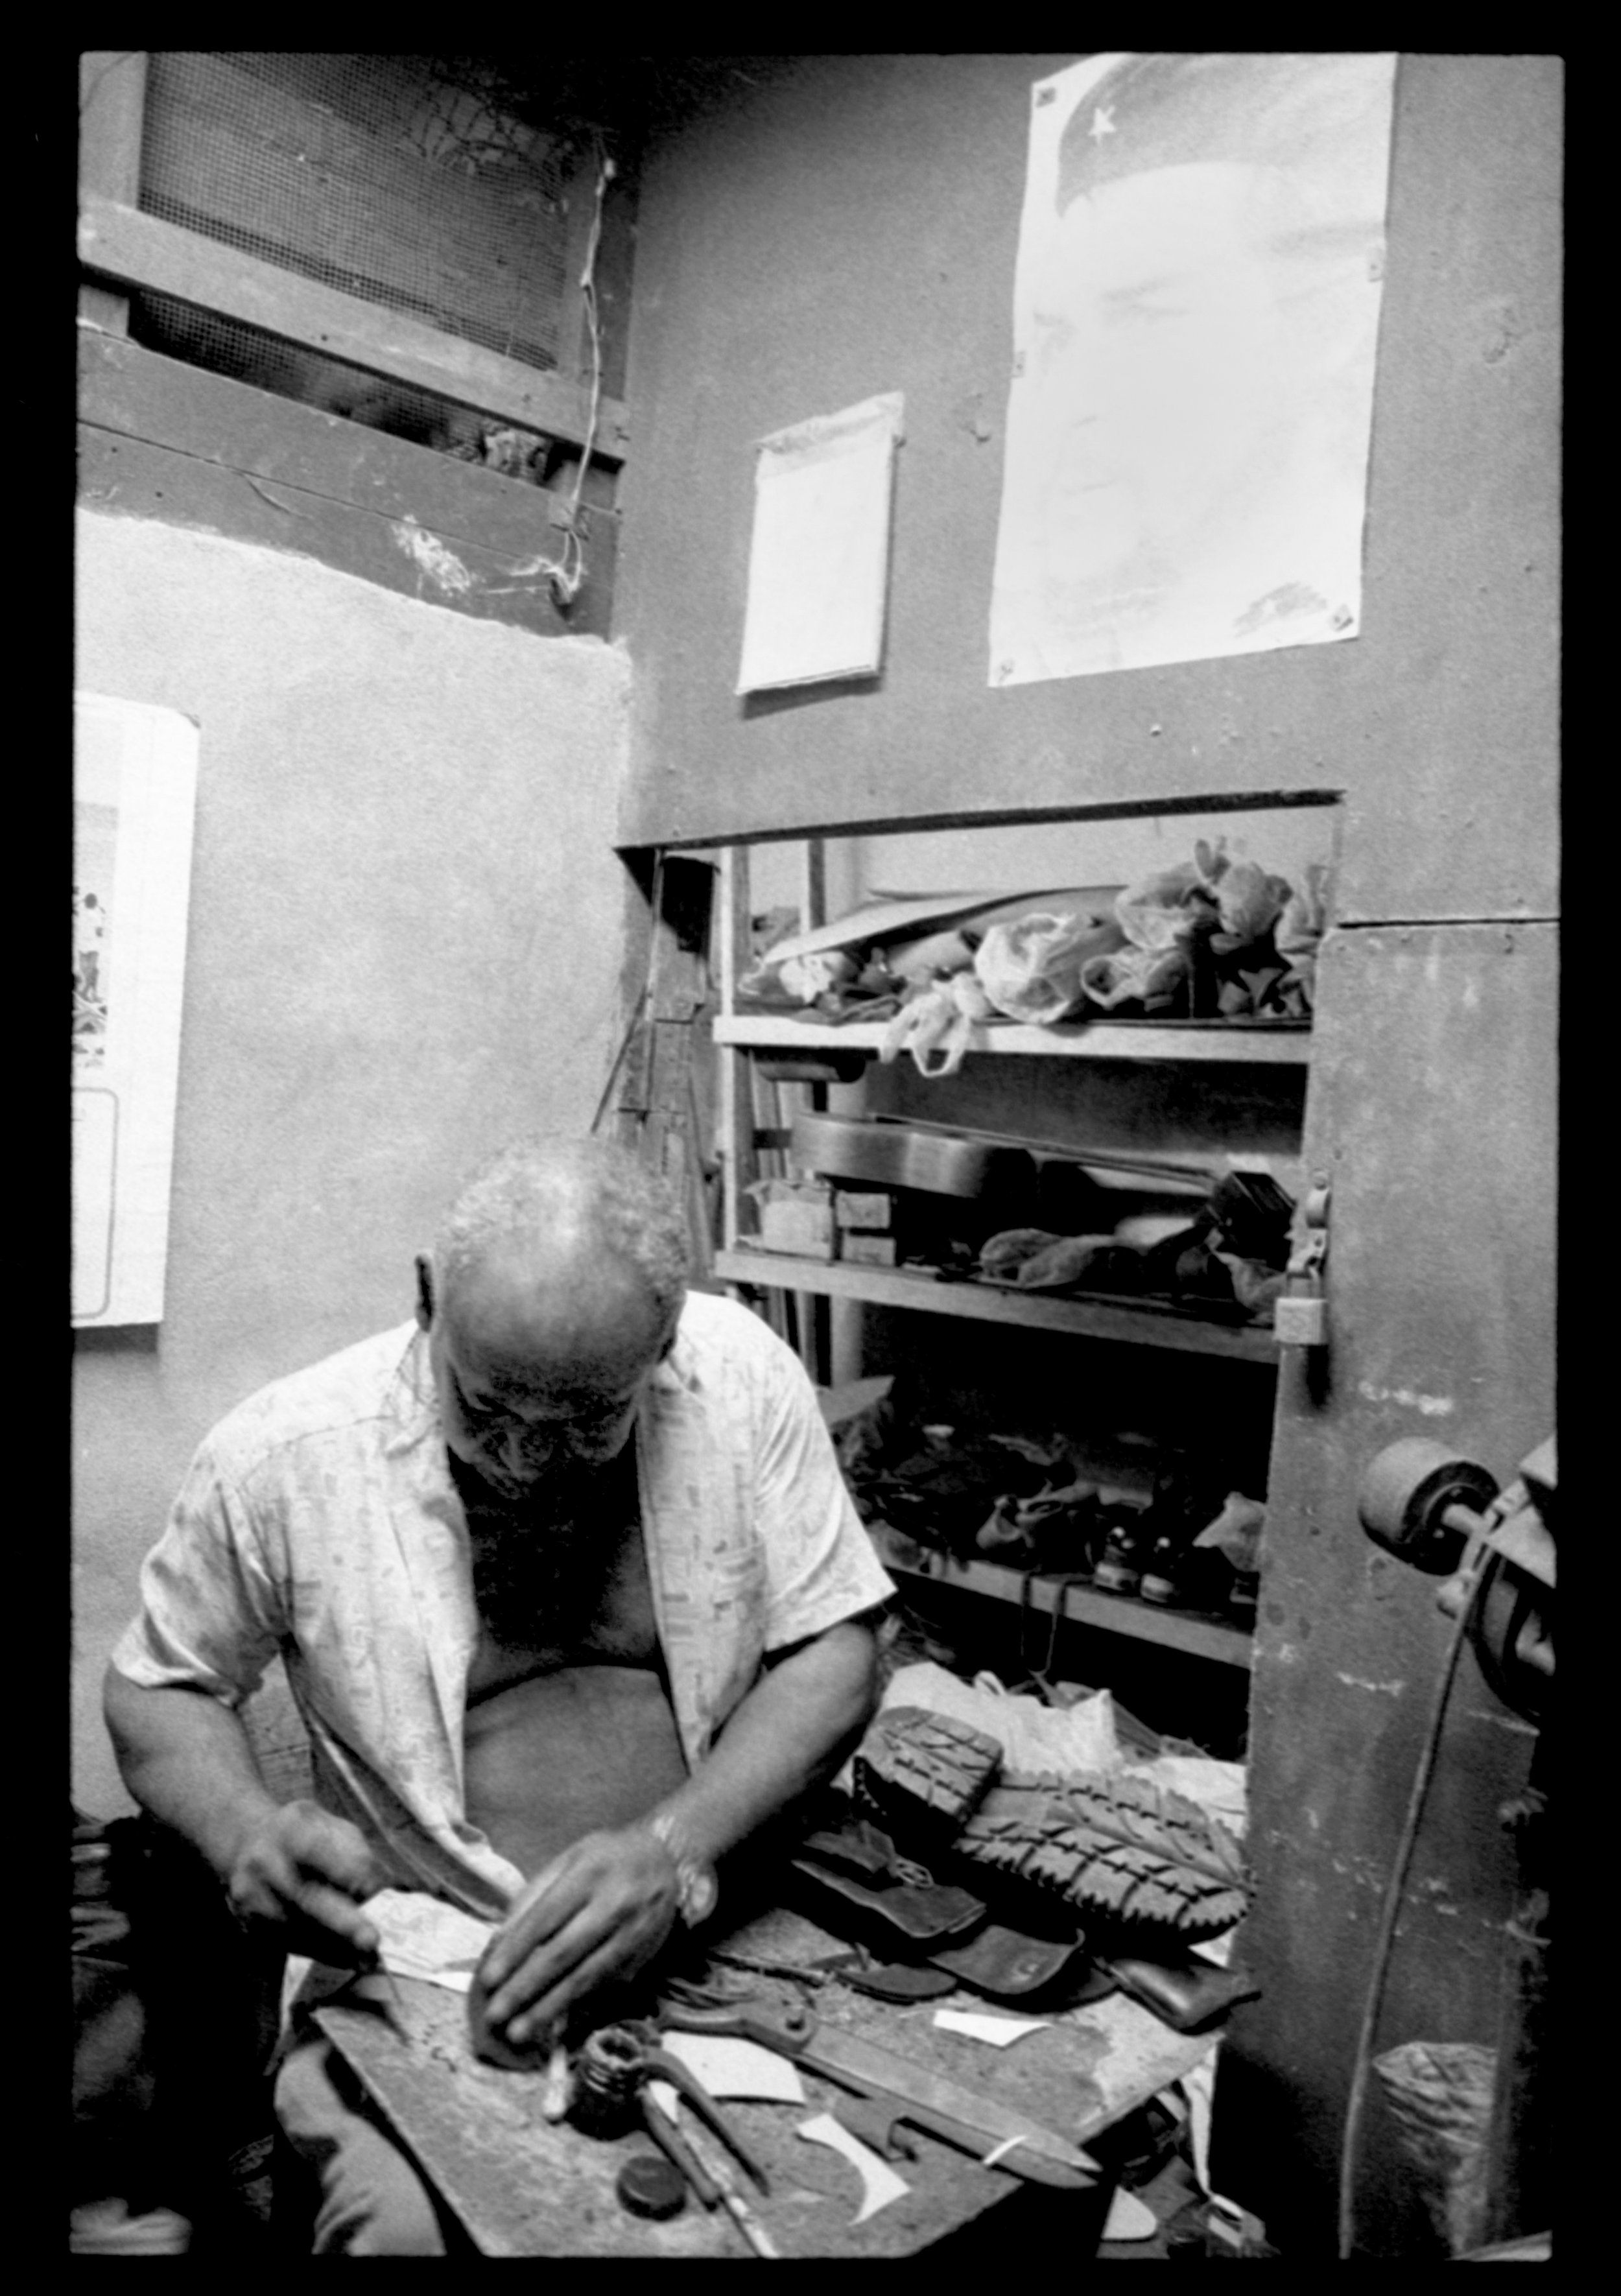  Shoe repair in Havana, Cuba. 